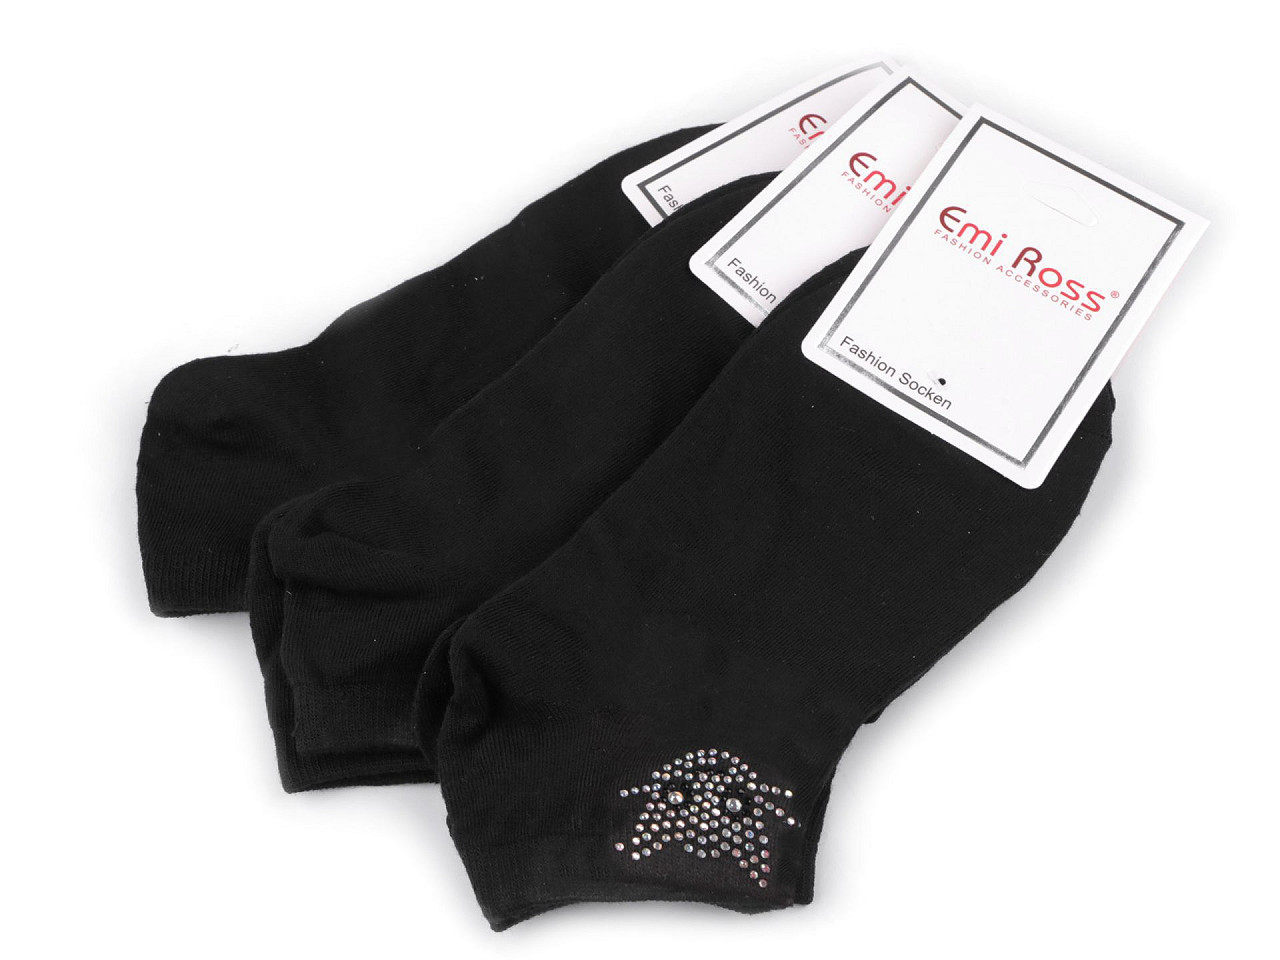 Dámské bavlněné ponožky kotníkové s kamínky Emi Ross, barva 61 (39-42) černá